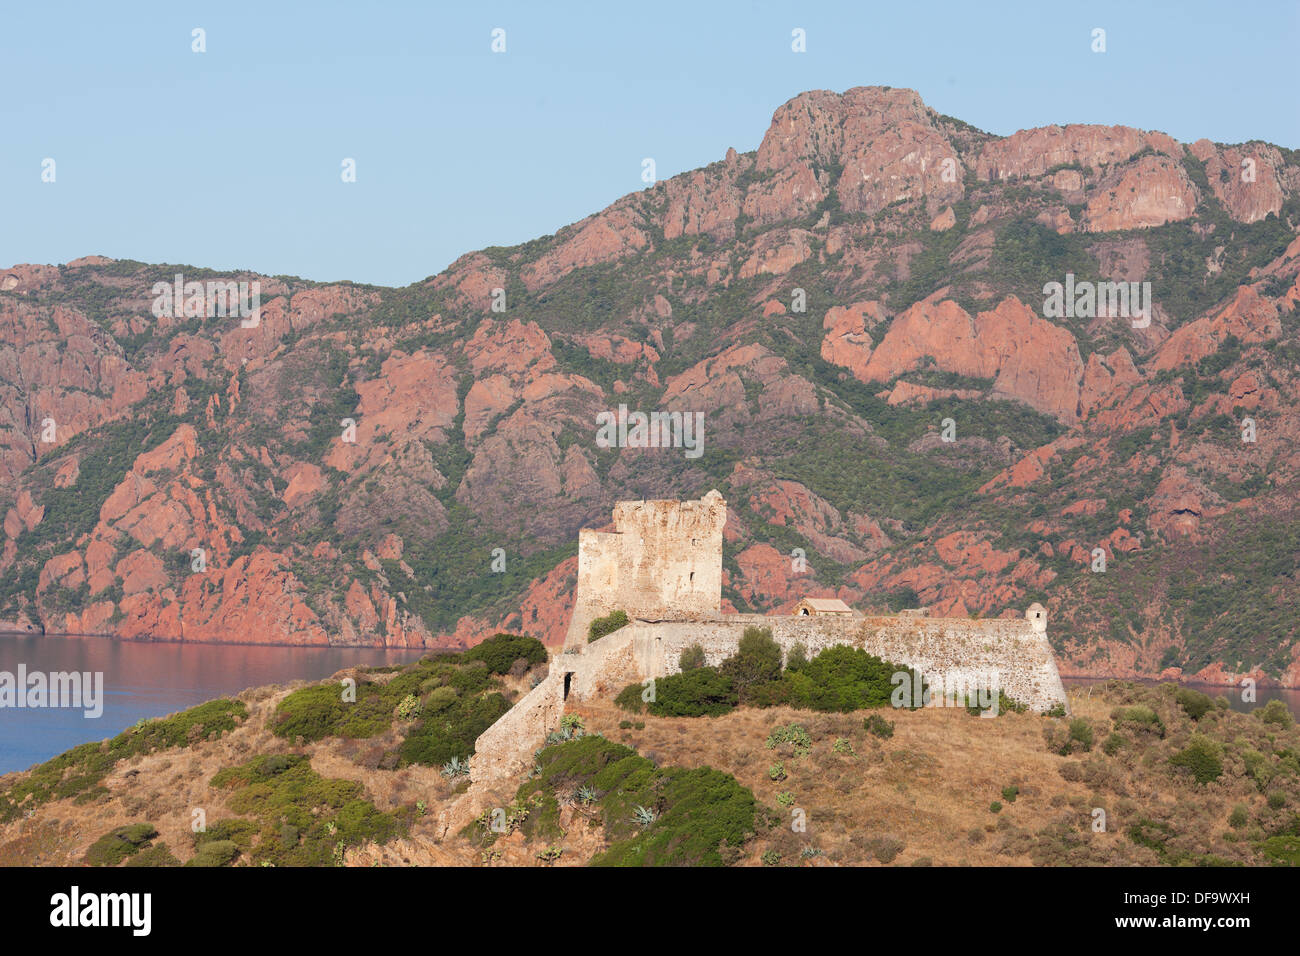 La torre genovese si affaccia sul Golfo di Girolata, con sullo sfondo la massiccia scogliera di roccia vulcanica rossa di Scandola. Osani, Corsica, Francia. Foto Stock